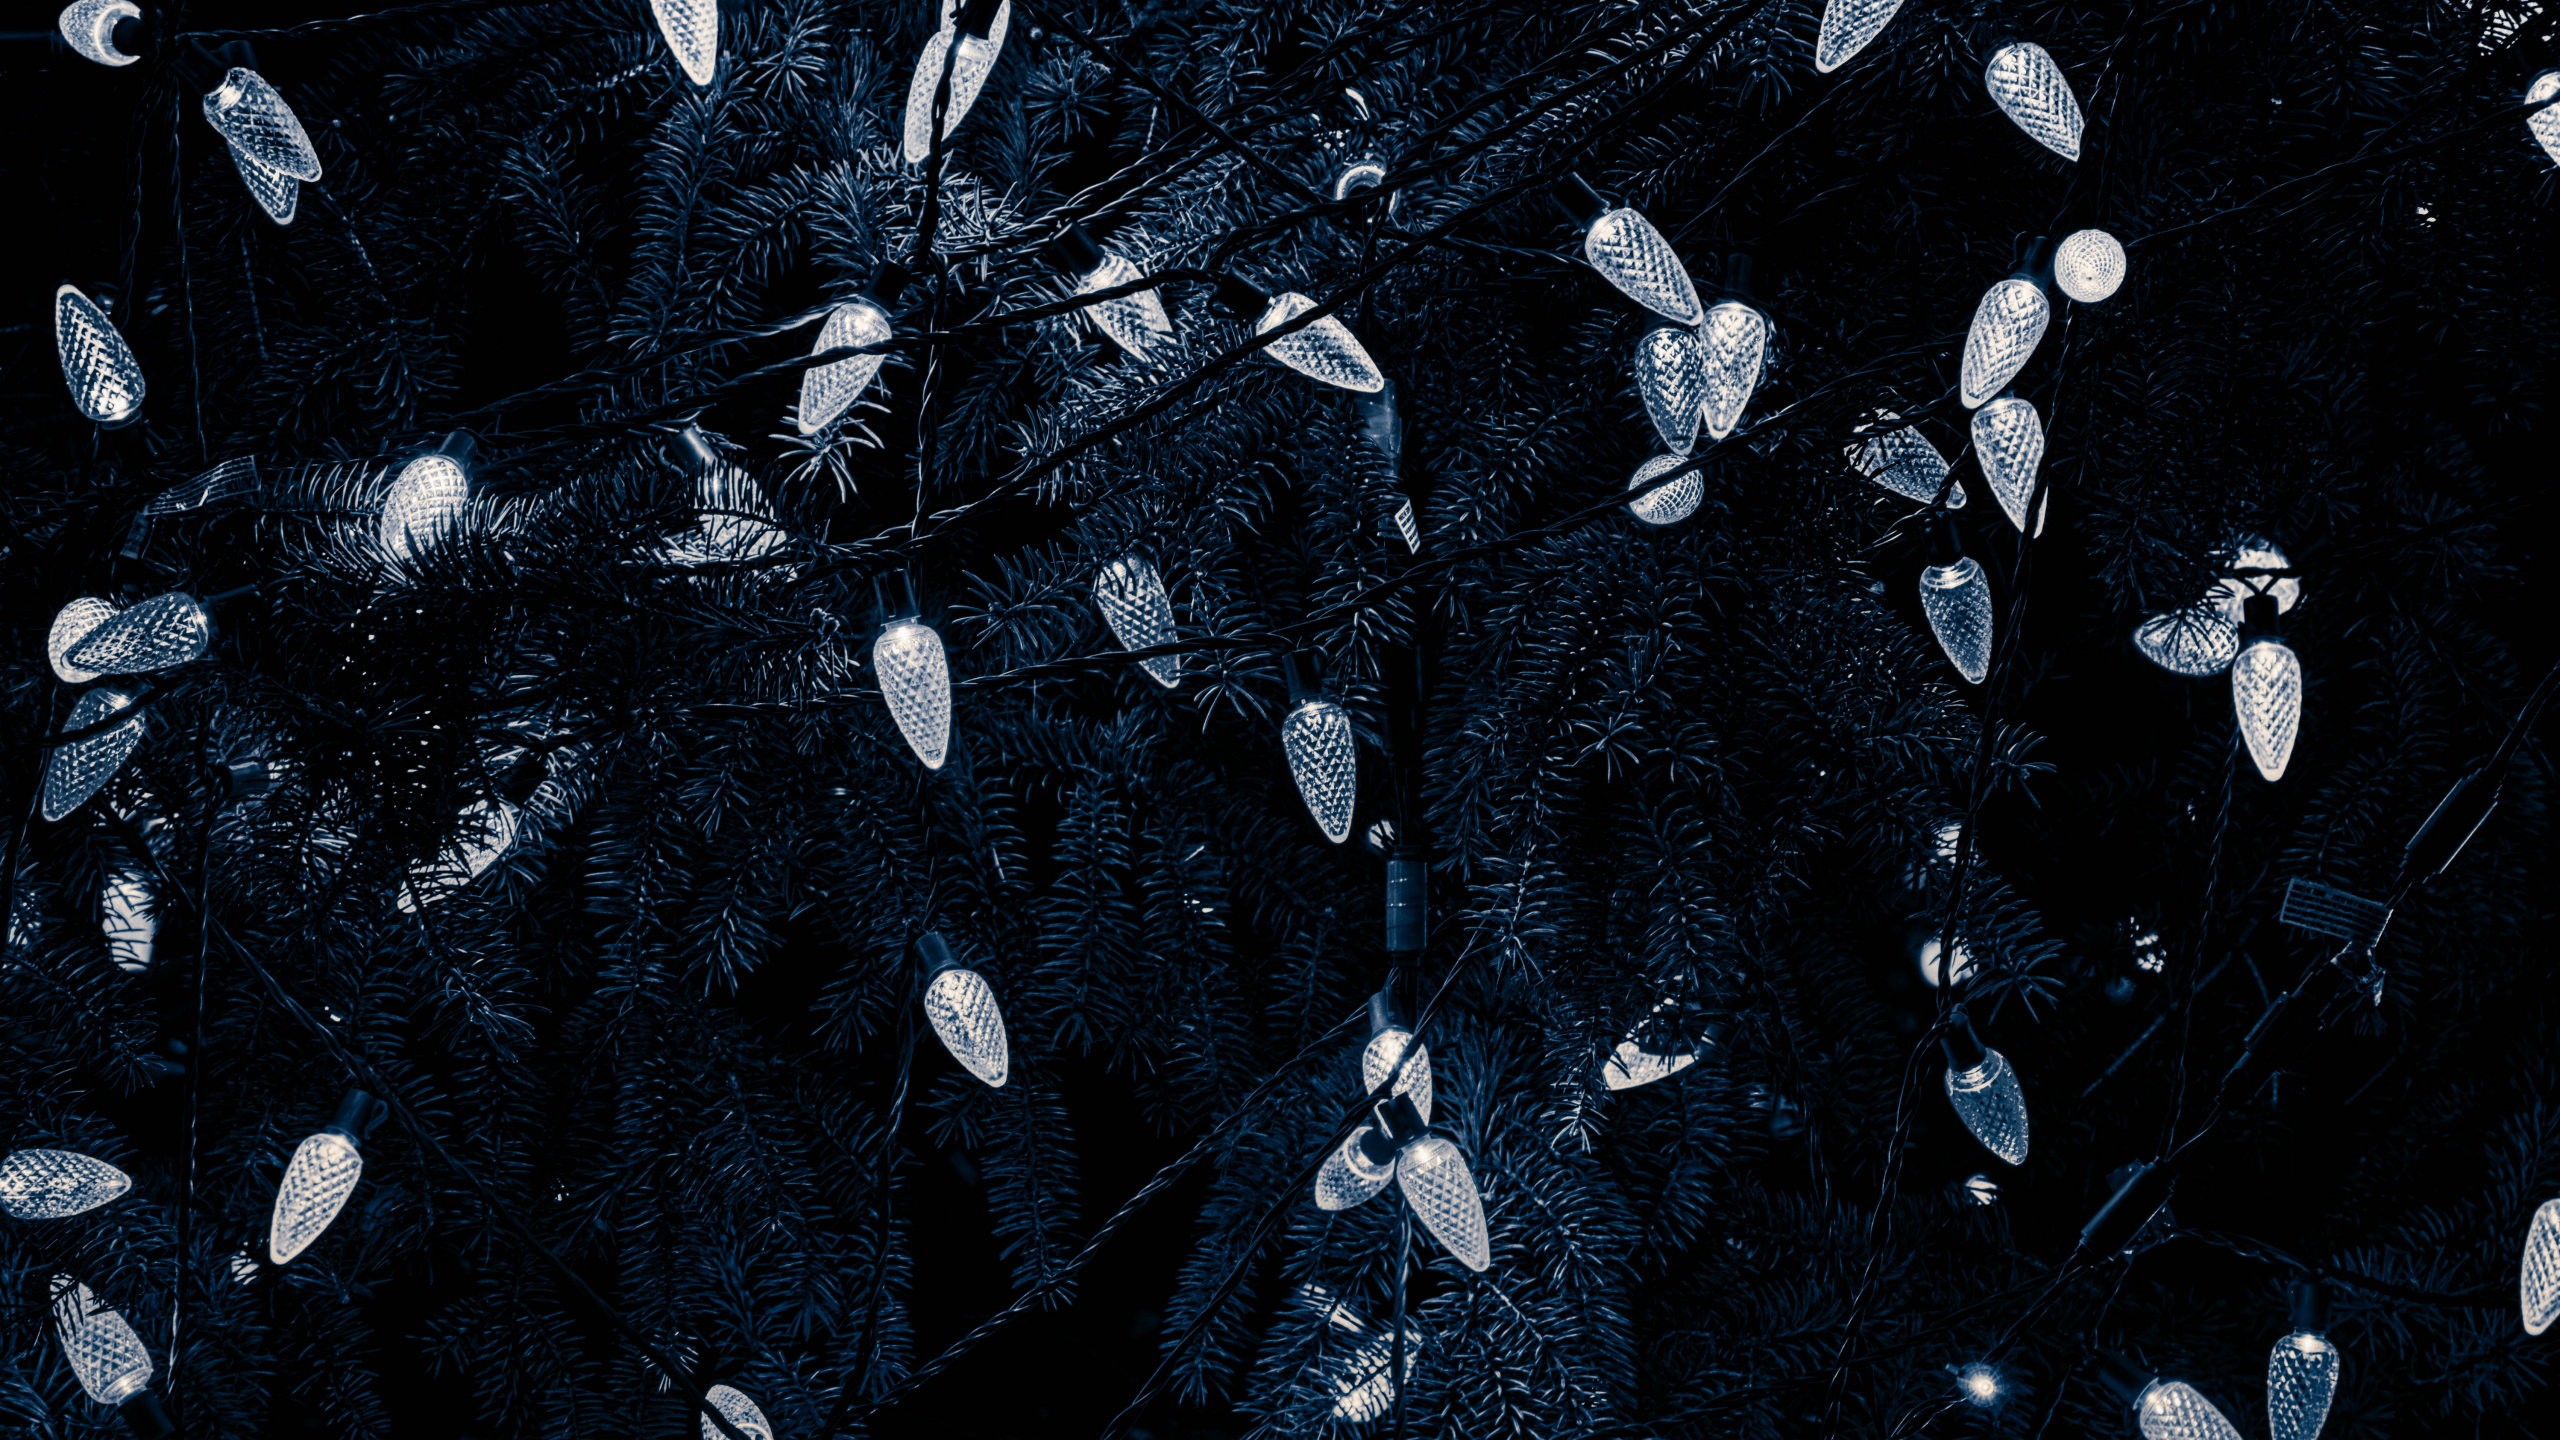 Negro, Agua, Patrón, en Blanco y Negro, Diseño. Wallpaper in 2560x1440 Resolution